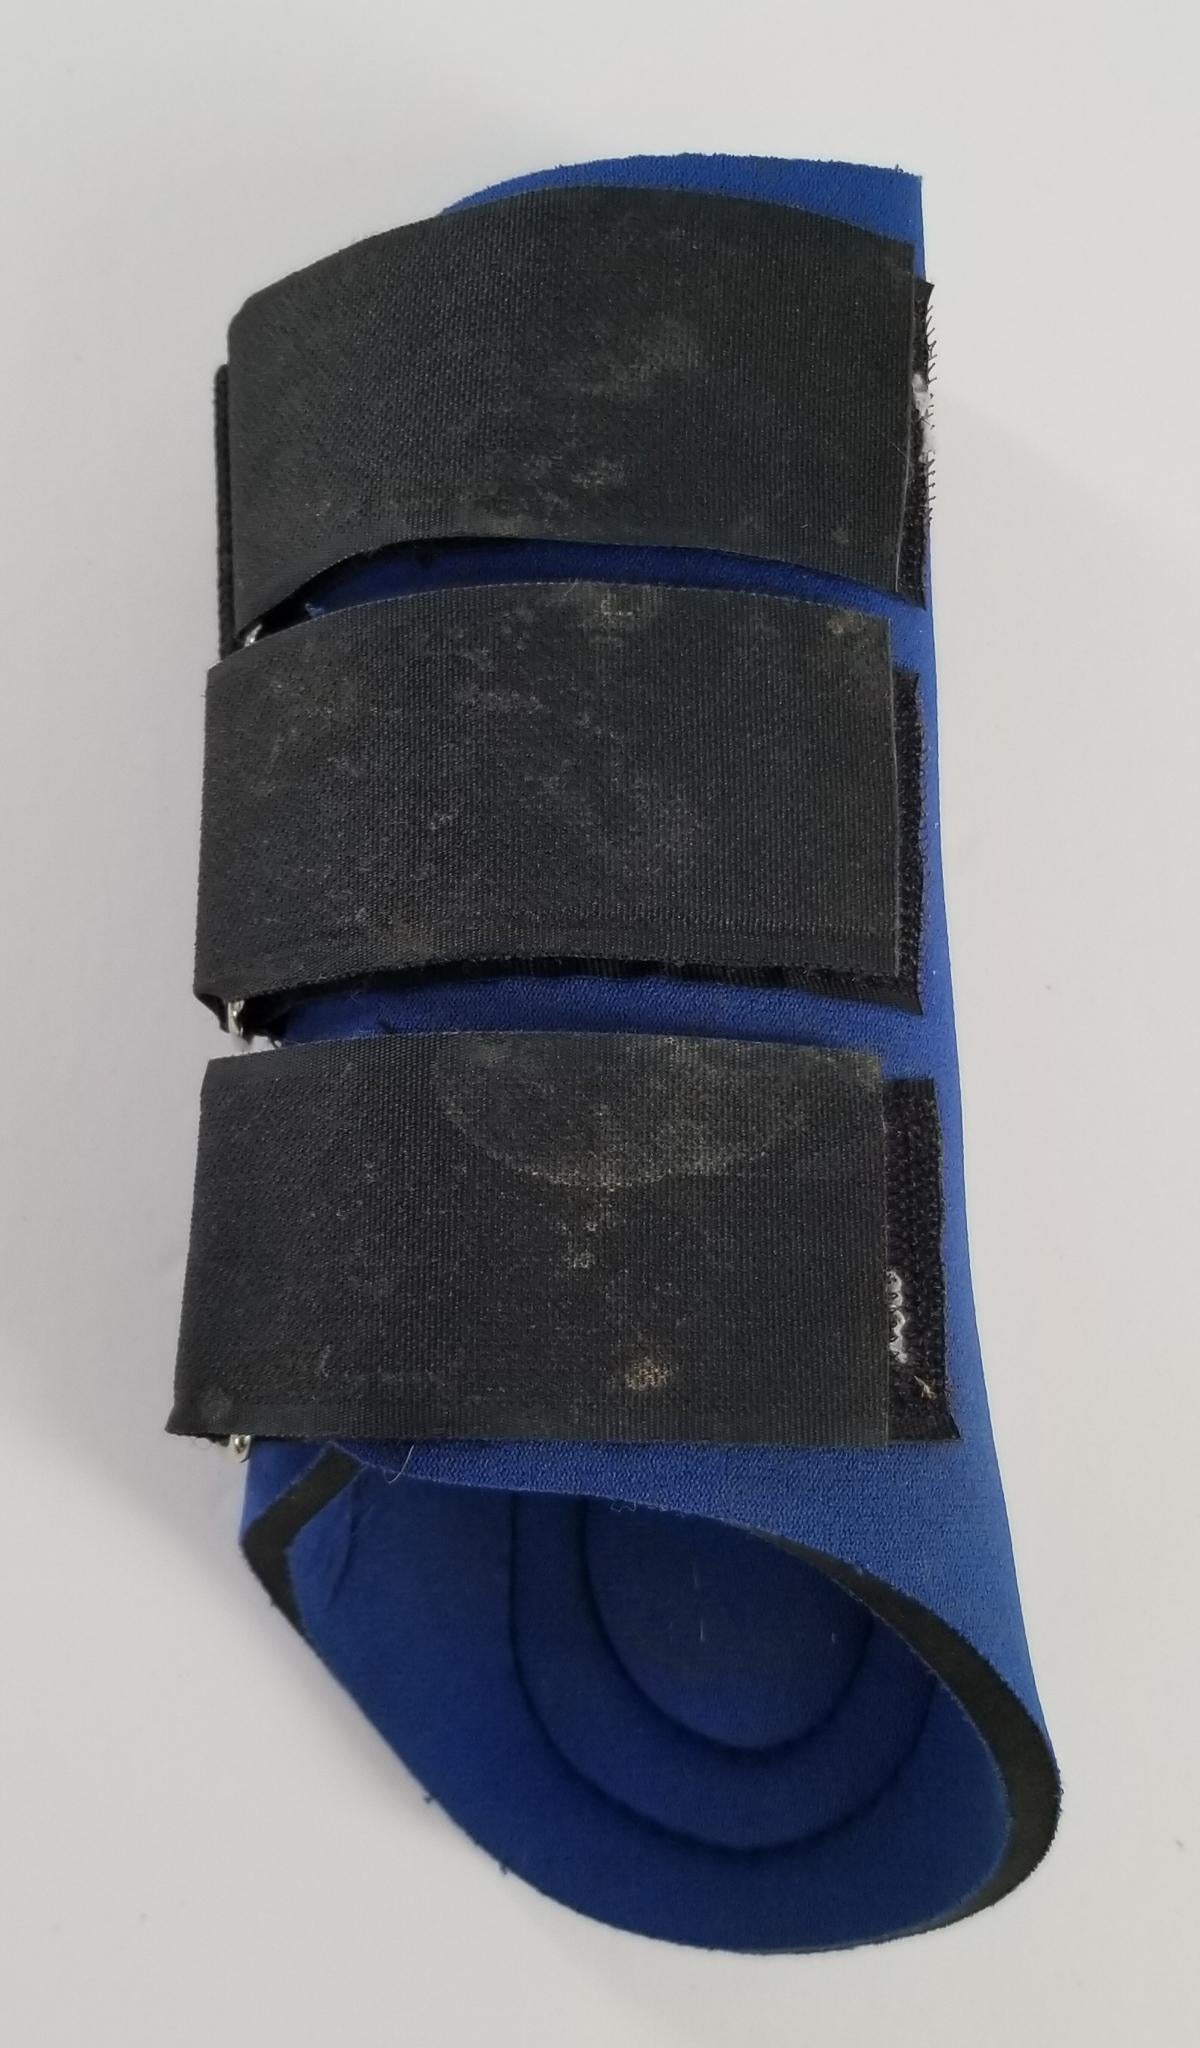 Neoprene Splint Boots - Blue - Small (Pony)